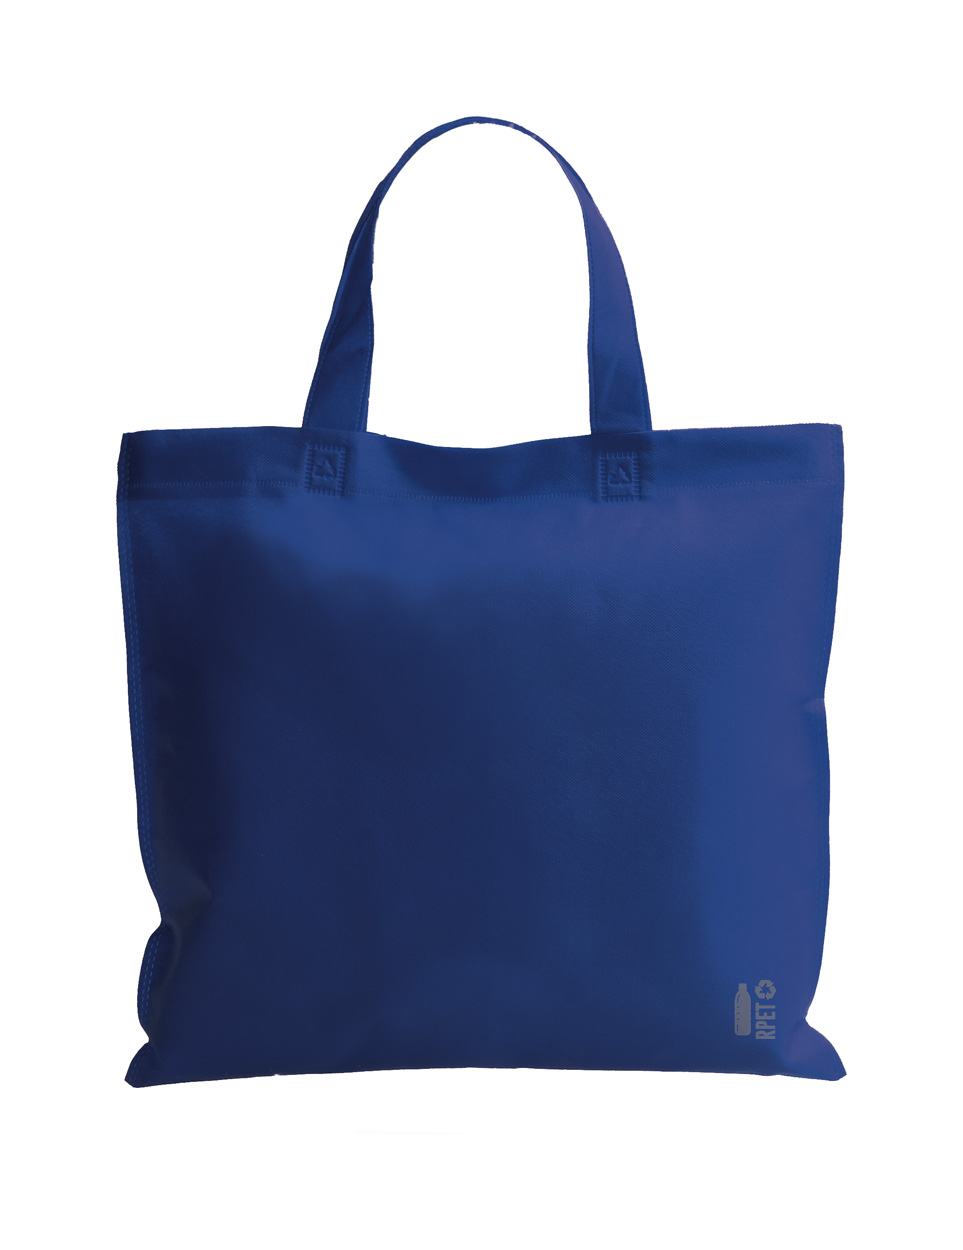 Raduin RPET nákupní taška - modrá